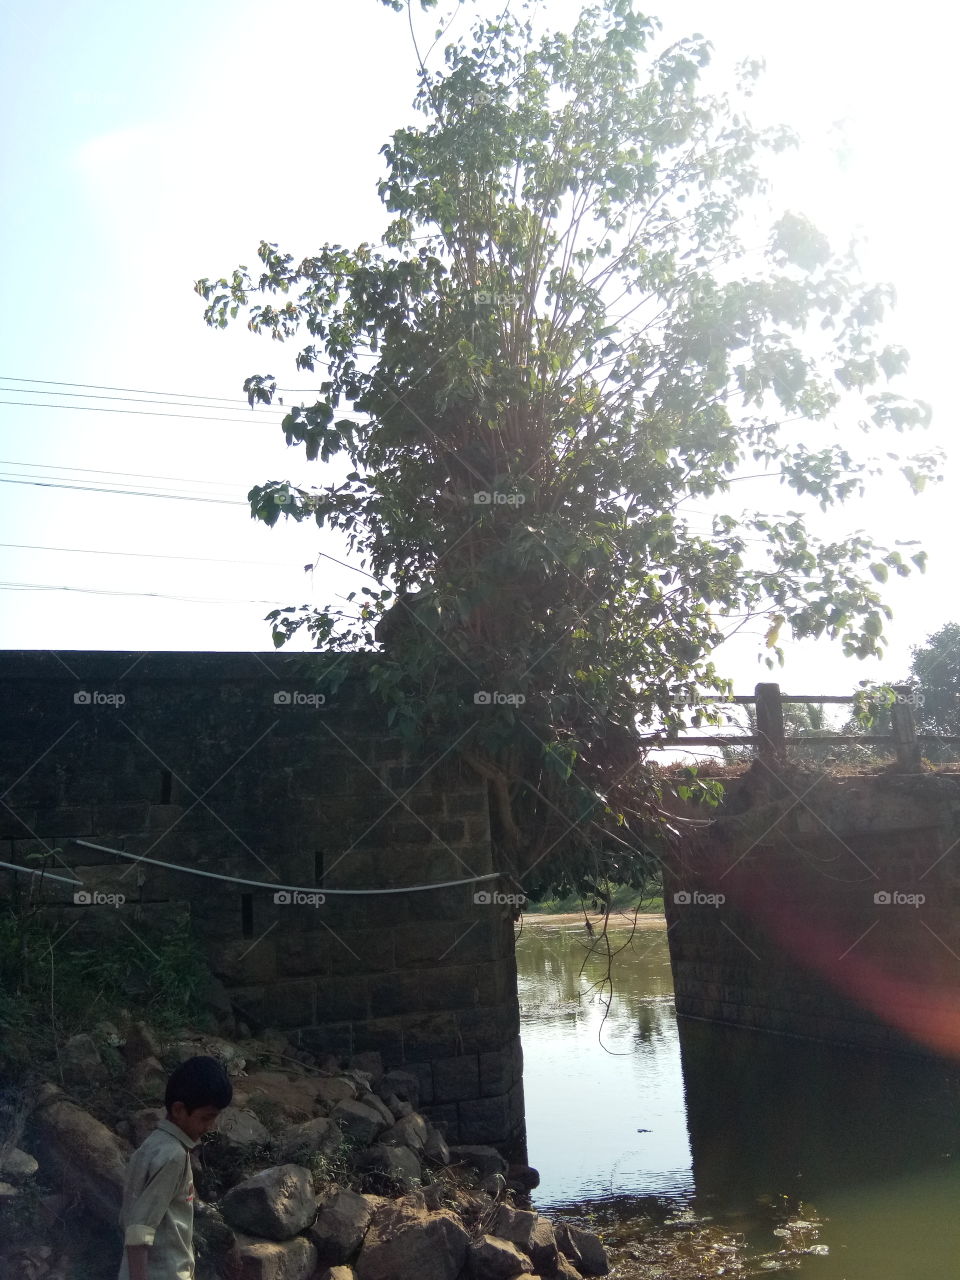 Tree on bridge